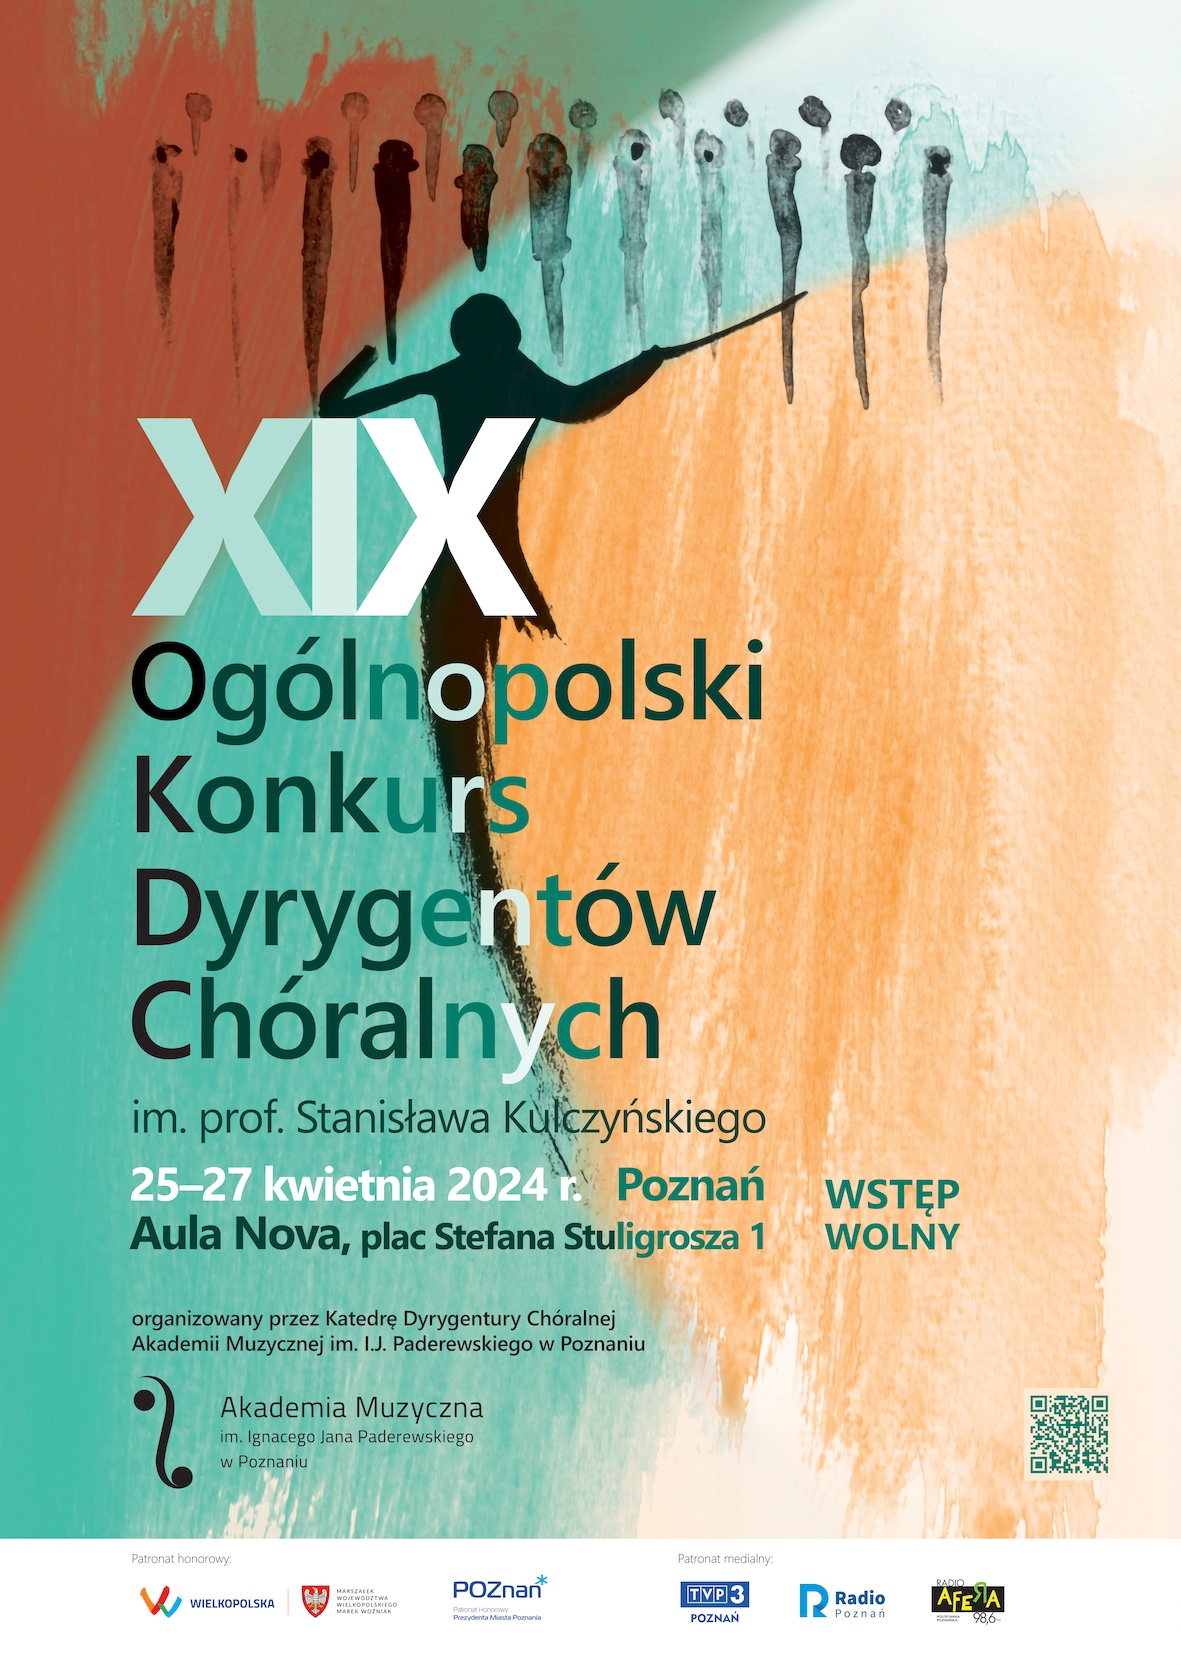 Plakat zawiera informacje na temat Konkursu Dyrygentów Chóralnych, który odbędzie się w Poznaniu w dniach 25-27 kwietnia 2024